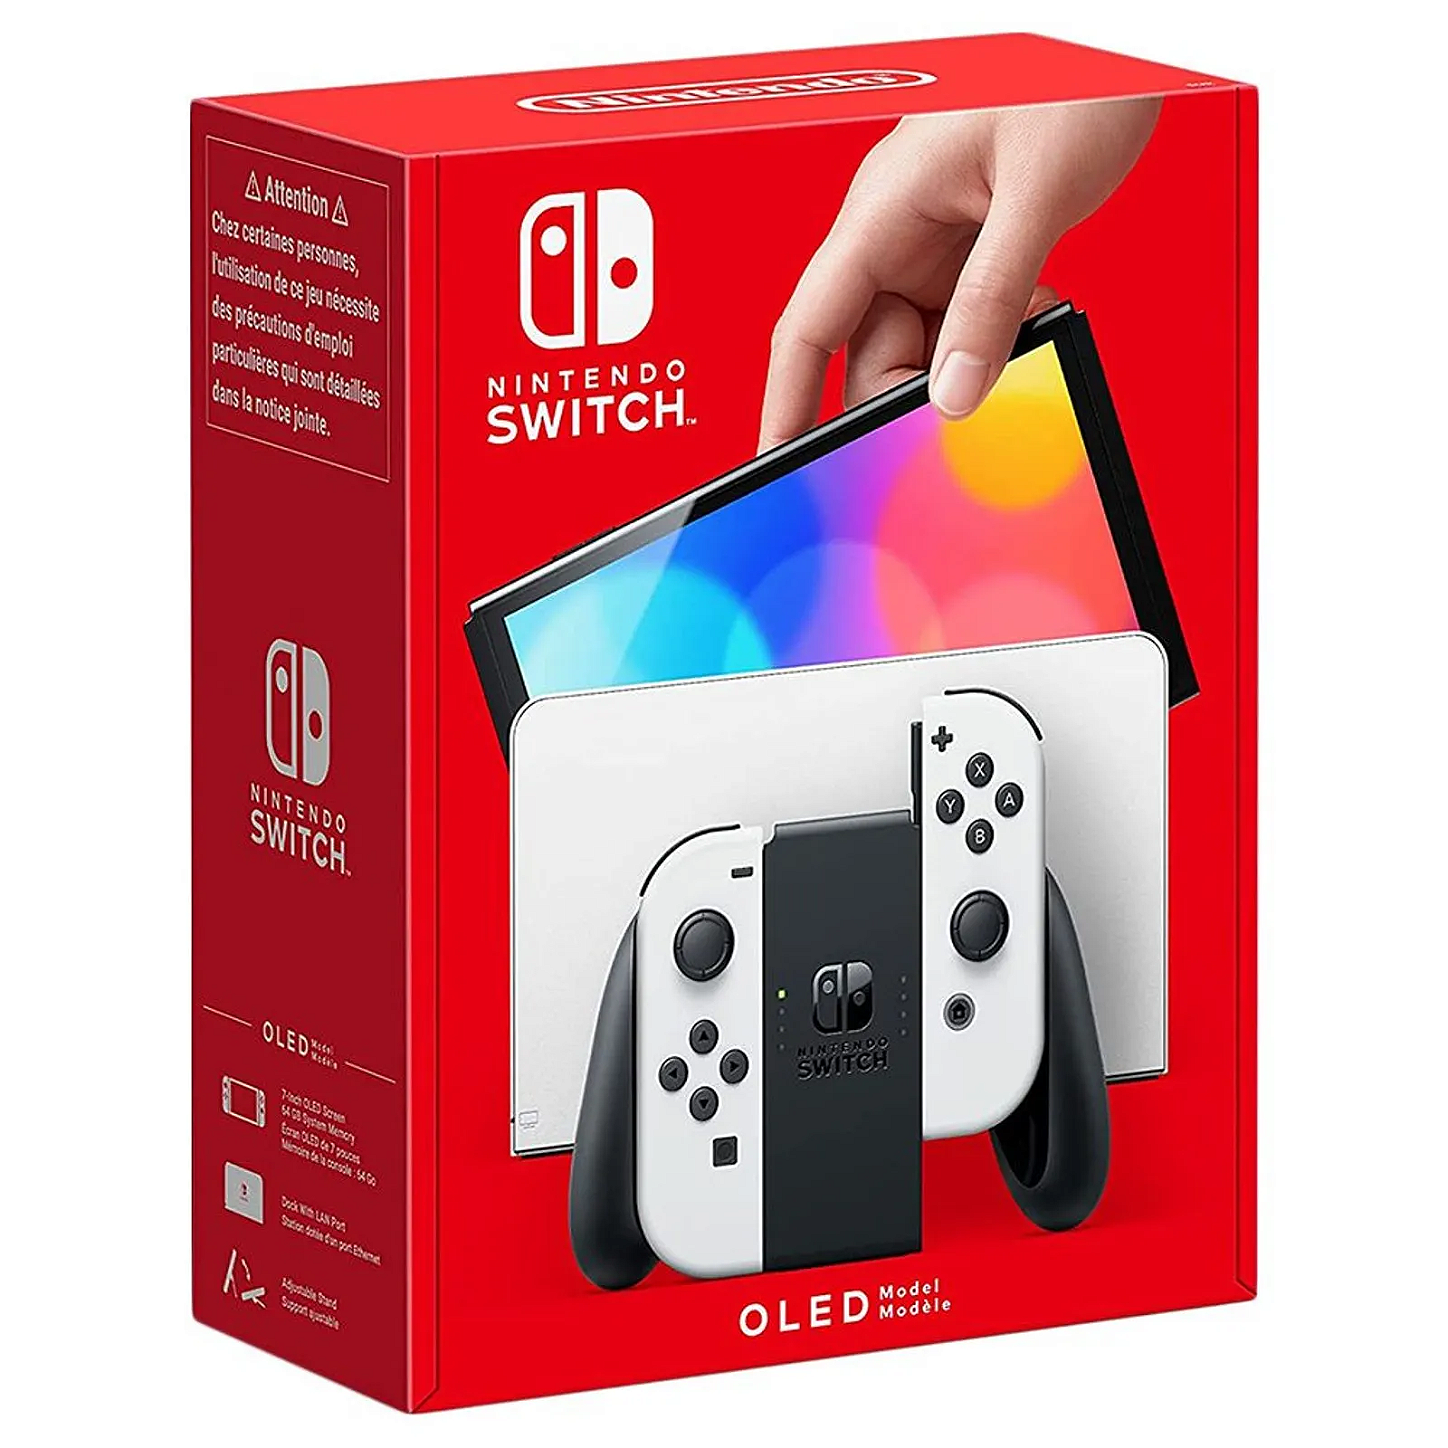 Console Nintendo Switch OLED 64GB com Joy Con Azul/Vermelho